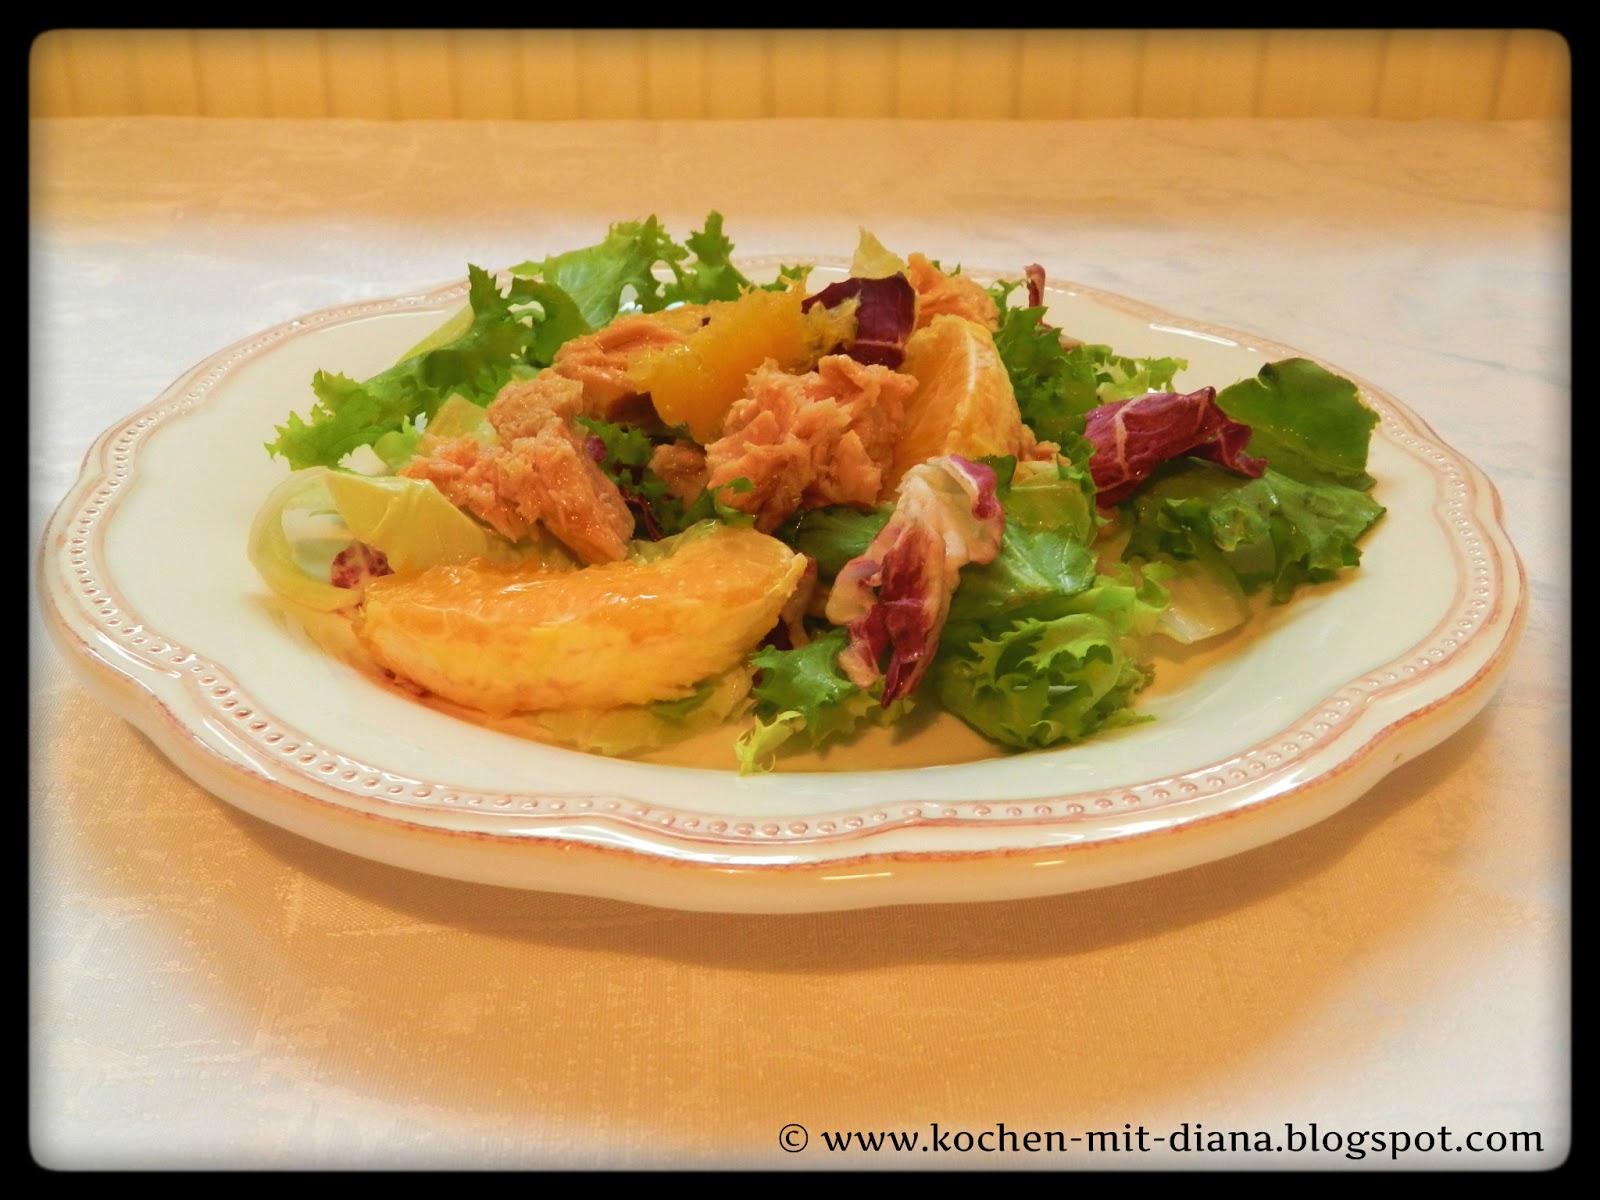 Salat mit Tunfisch und Orangen